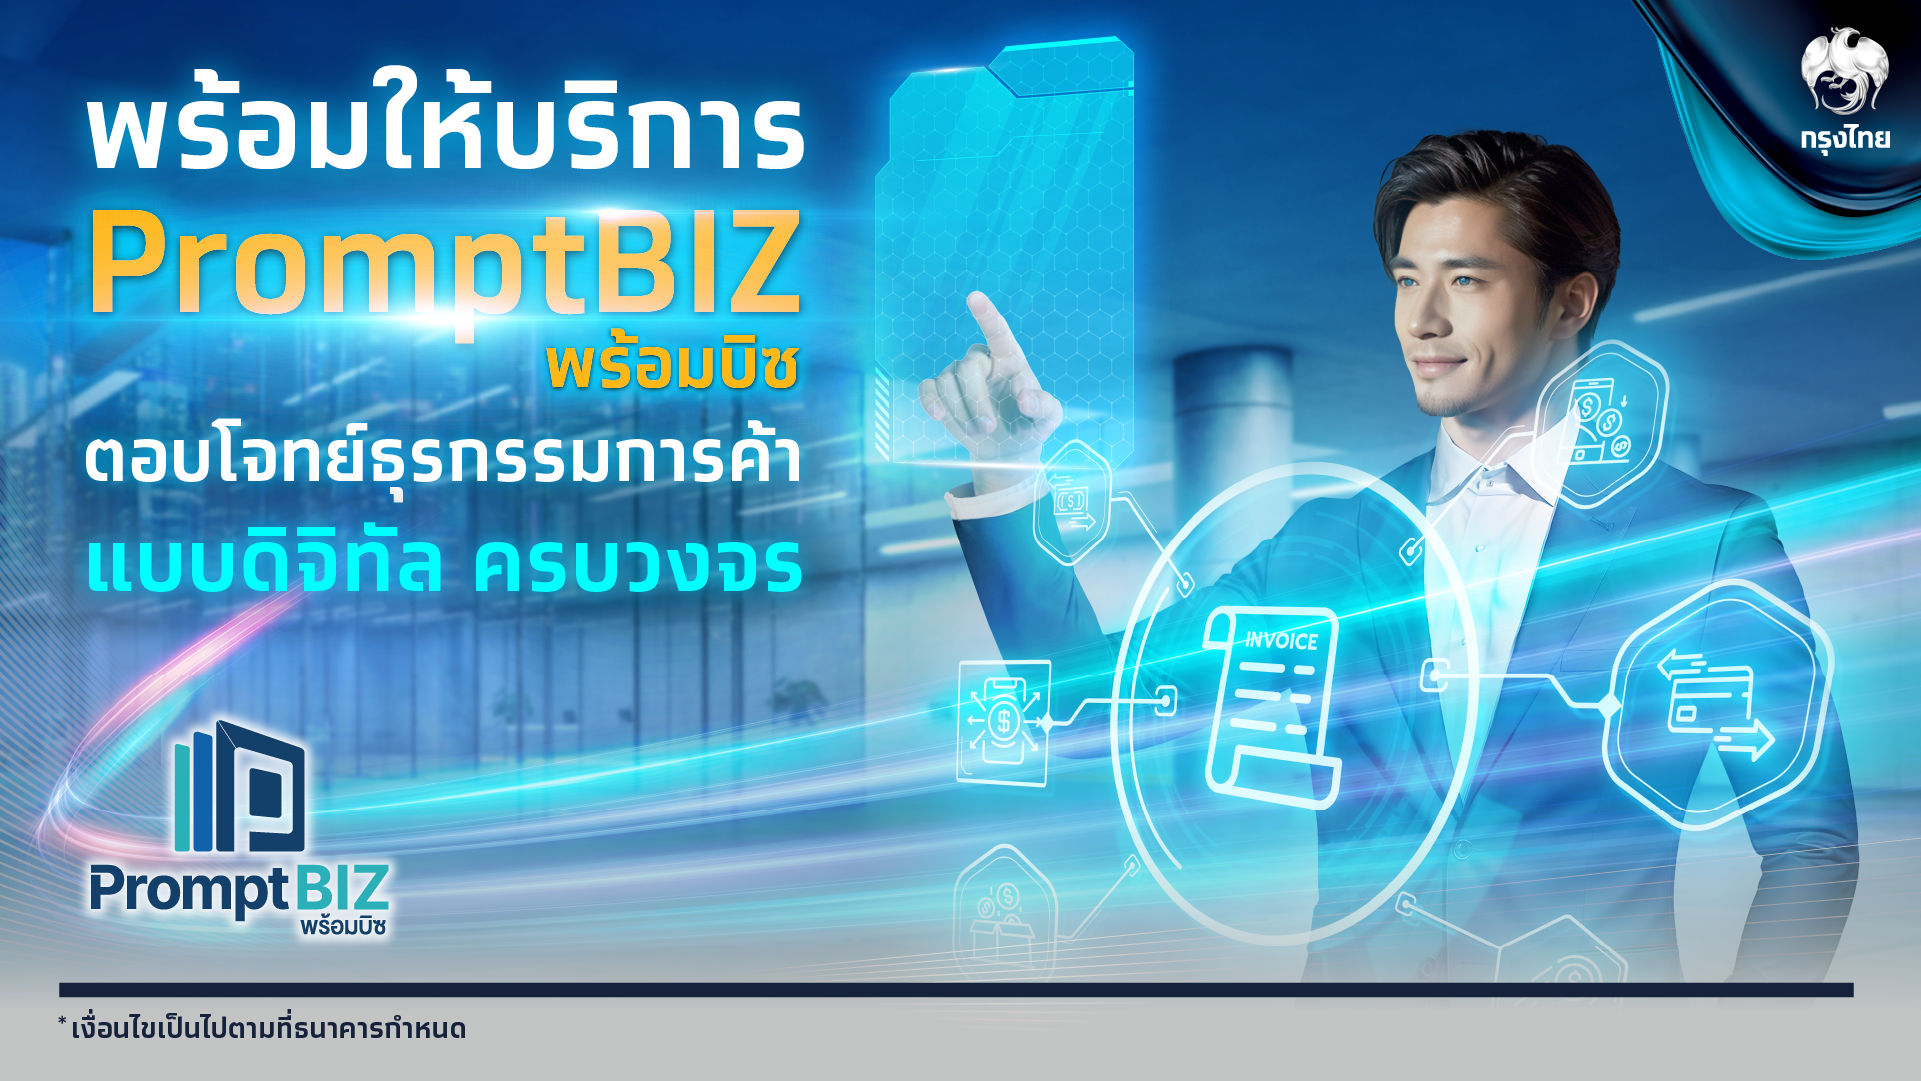 “กรุงไทย” พร้อมให้บริการ “PromptBIZ” ผ่านดิจิทัลแพลตฟอร์ม Krungthai BUSINESS